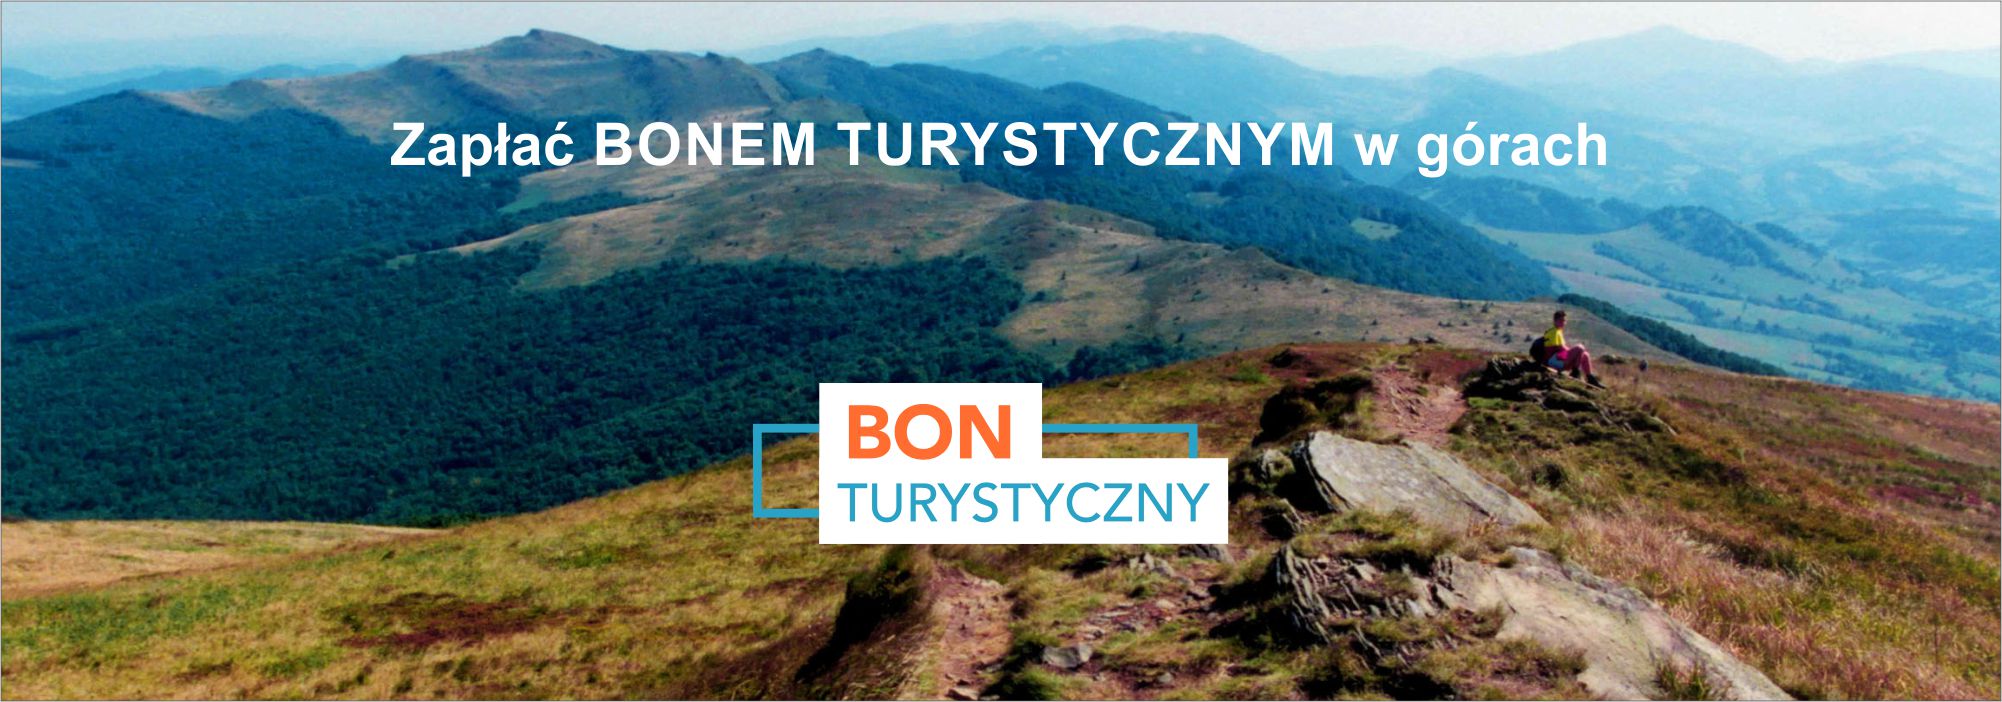 Zrealizuj Polski Bon Turystyczny w górach